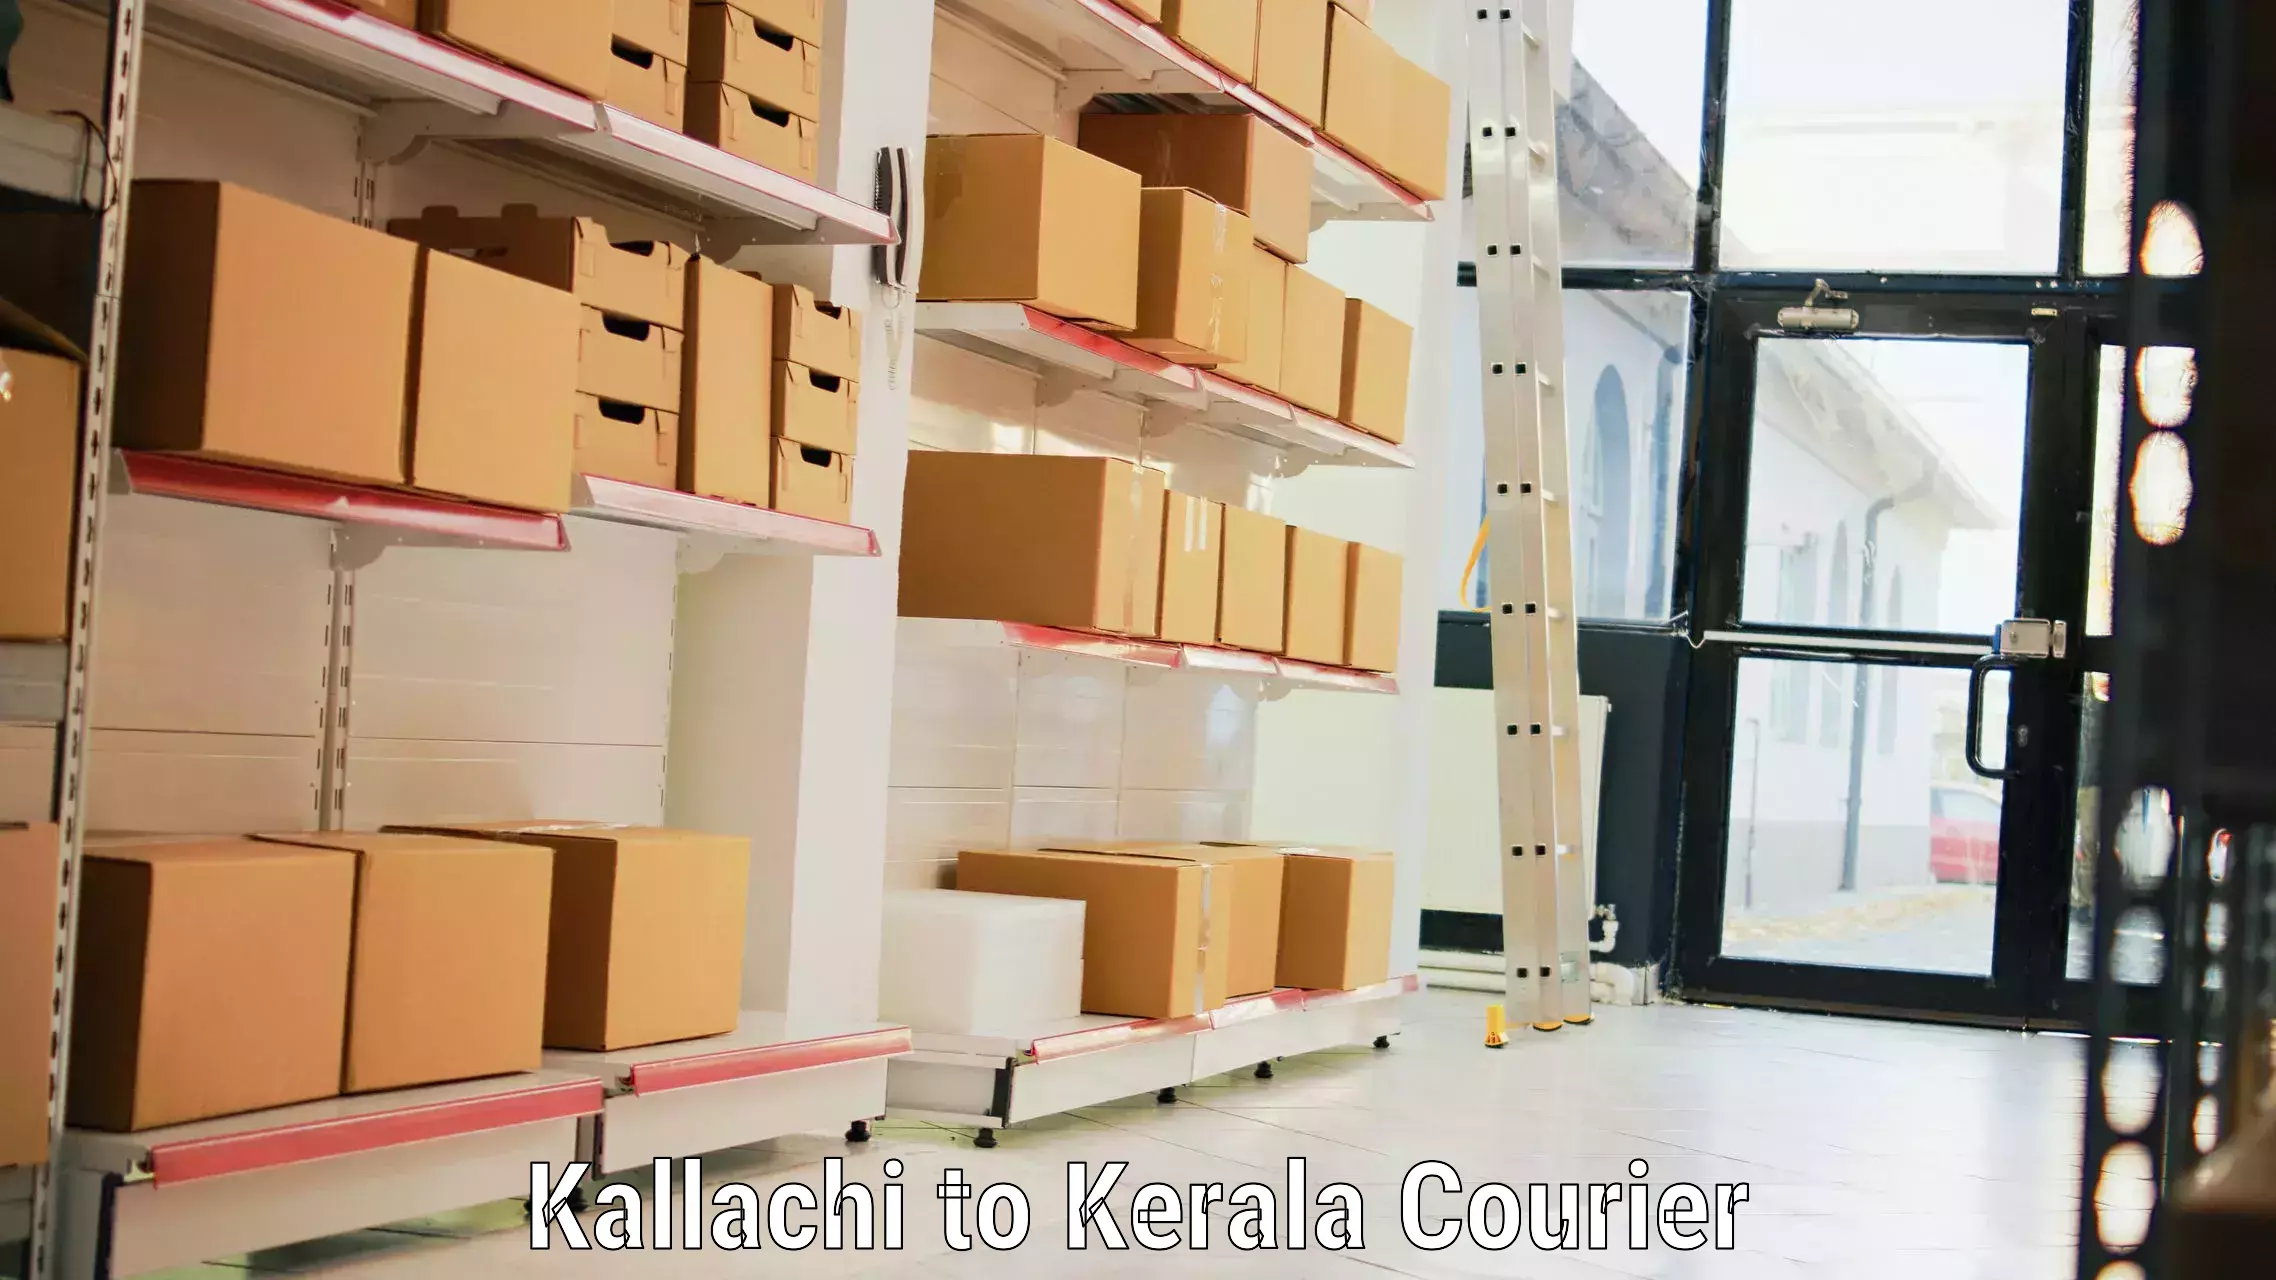 Automated luggage transport in Kallachi to Kakkur